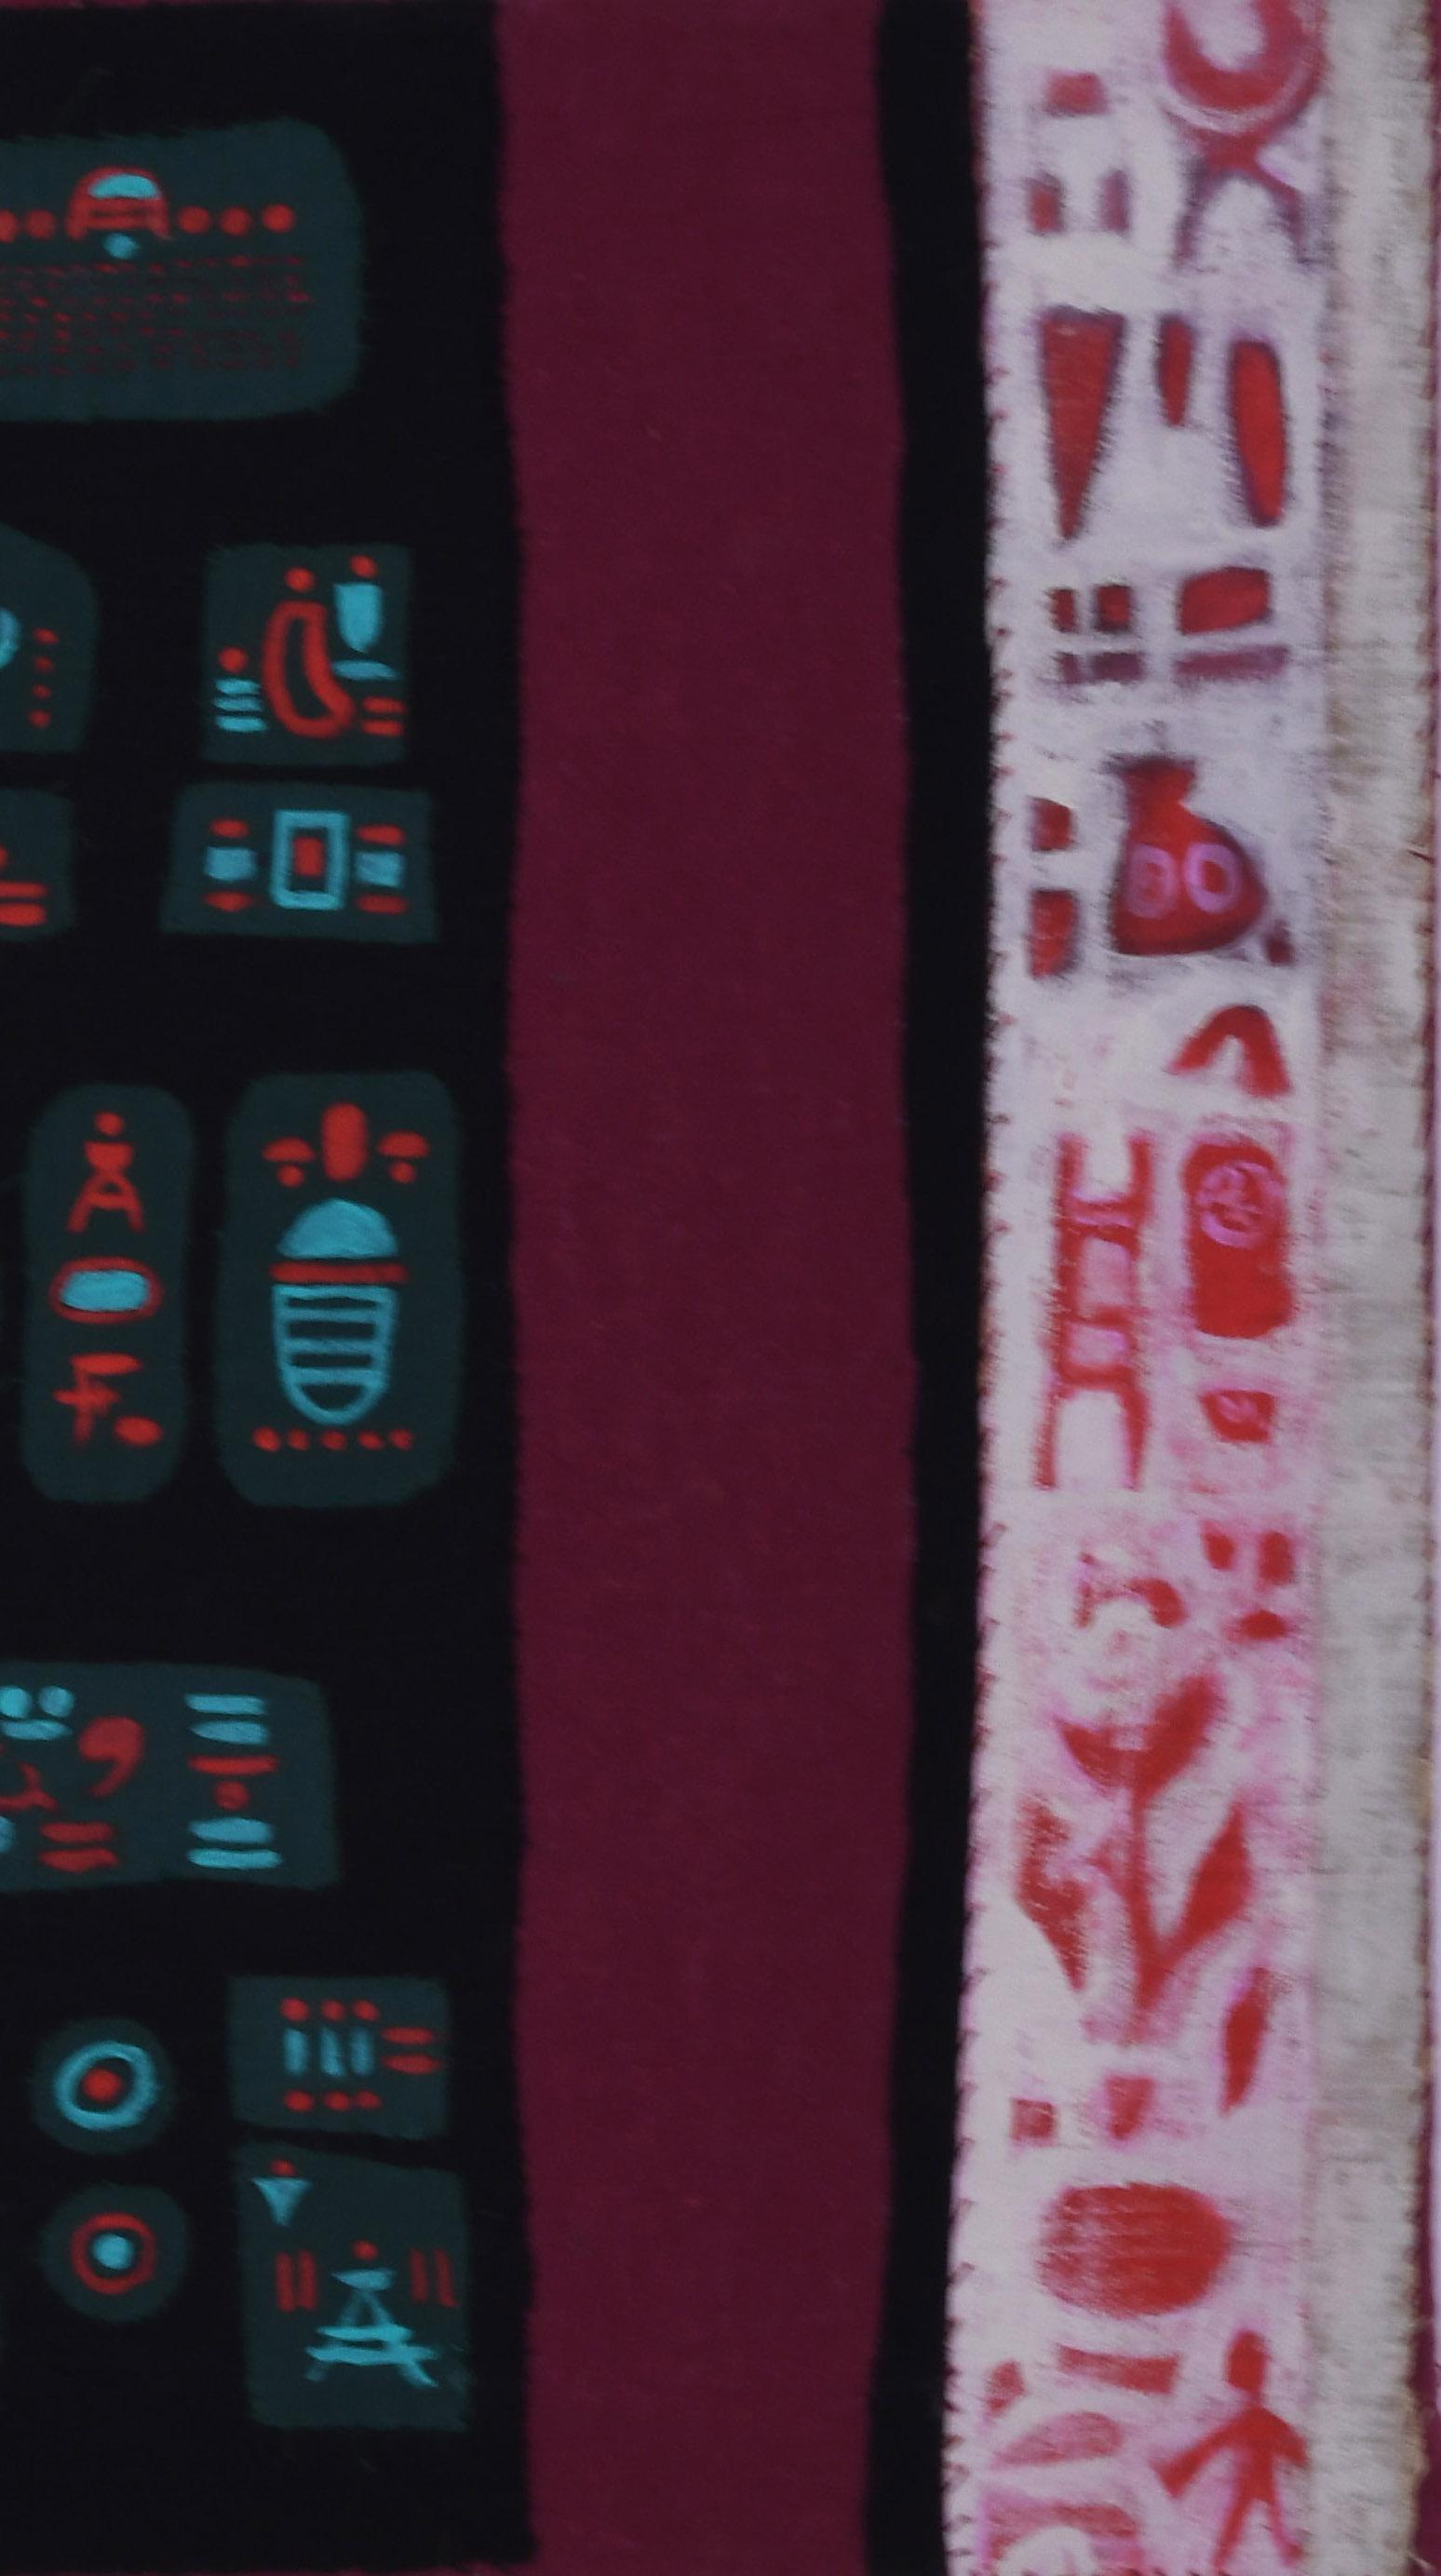 Chaco
Leinwand, Stoff, Pigment und Collageelemente, 1985-1995
Signiert unten links in roter Farbe
Verso auf dem oberen Teil des Keilrahmens mit Bleistift betitelt und signiert
Zustand: Ausgezeichnet
Leinwandgröße: 18 x 18 Zoll
Provenienz: Nachlass